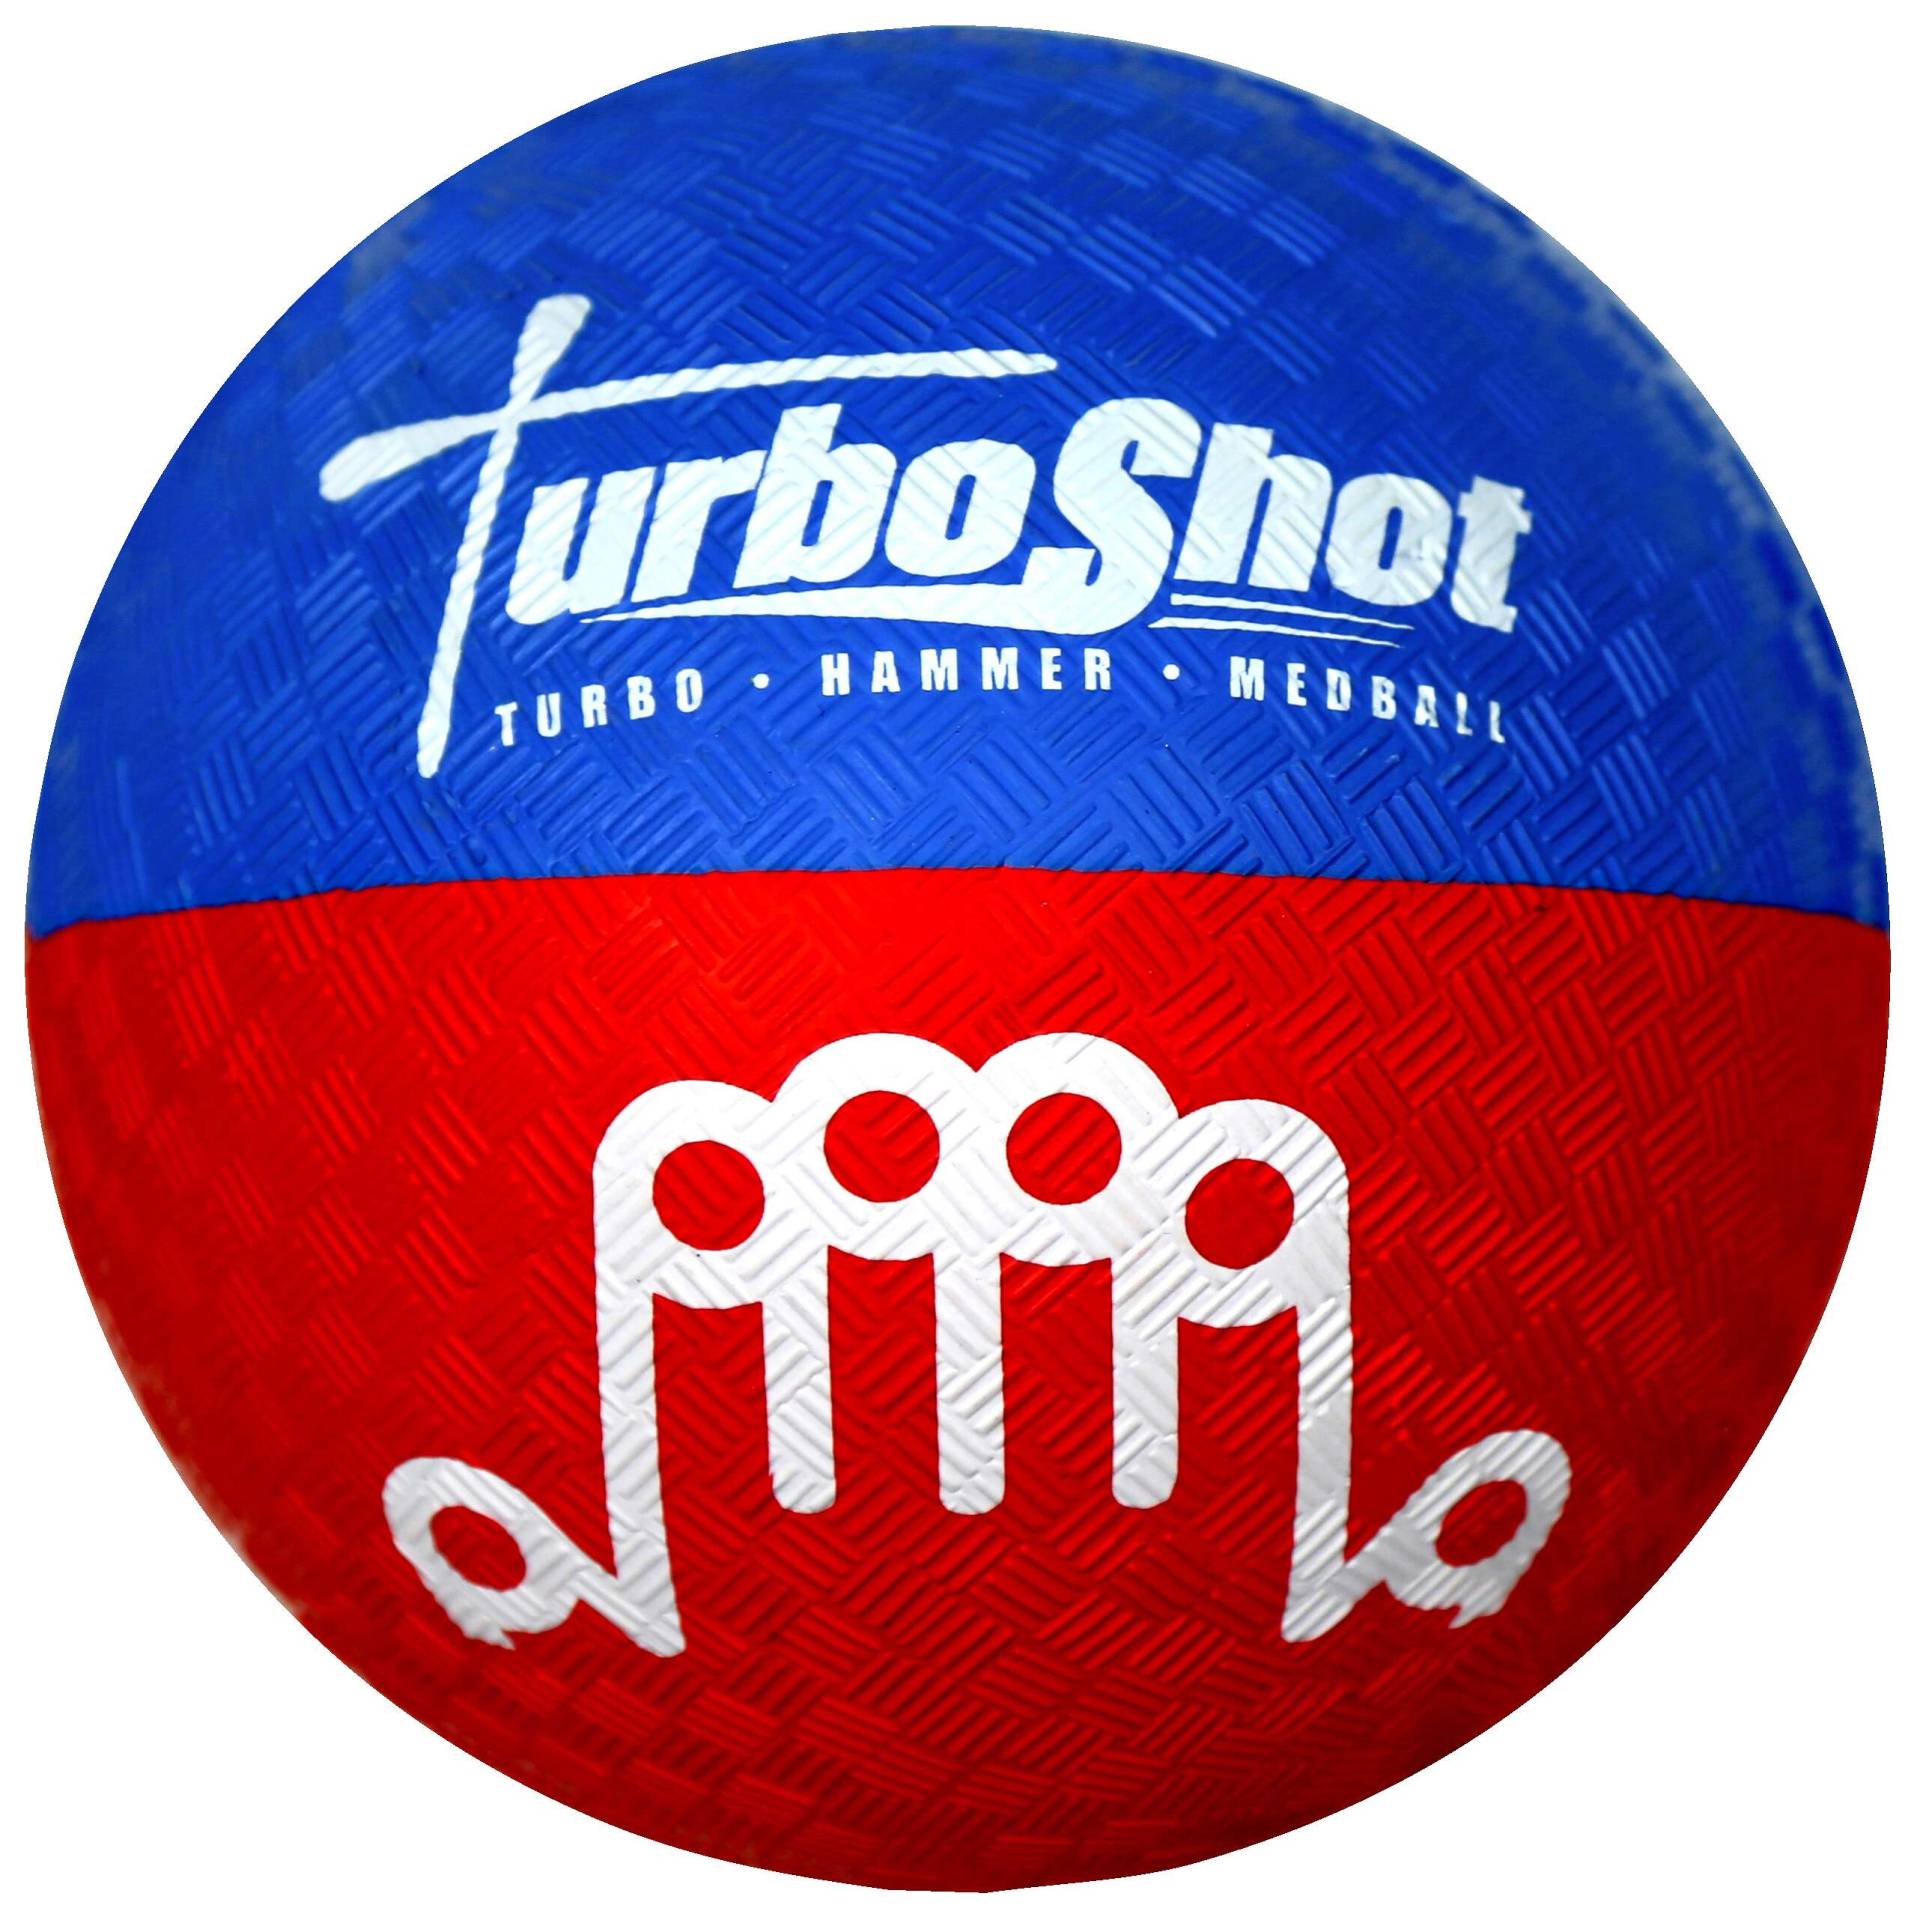 Turboshot Übungsstoßkugel "Soft" von Turboshot